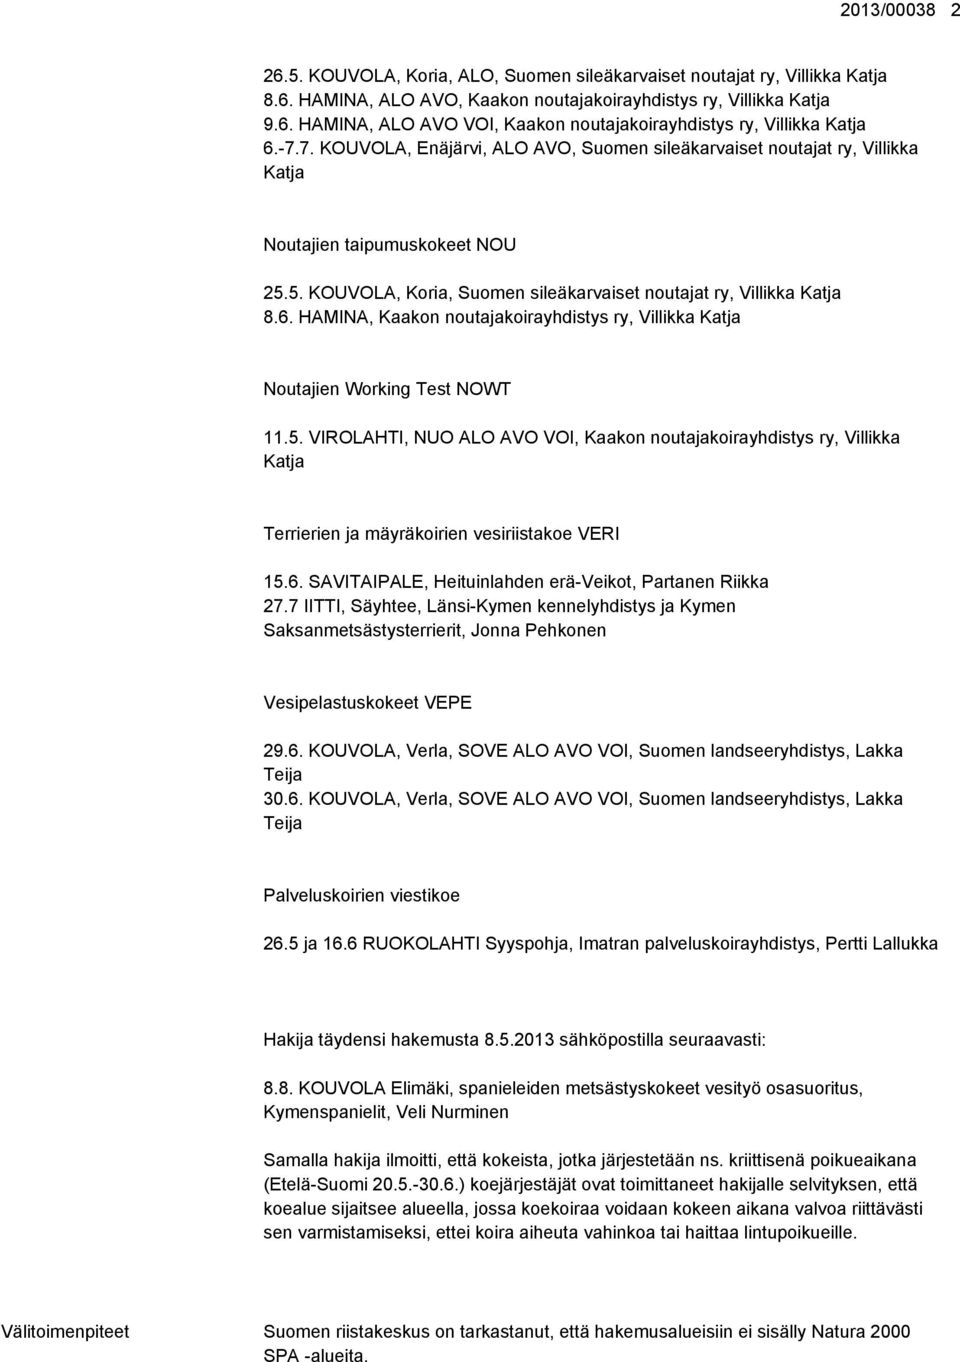 HAMINA, Kaakon noutajakoirayhdistys ry, Villikka Katja Noutajien Working Test NOWT 11.5.